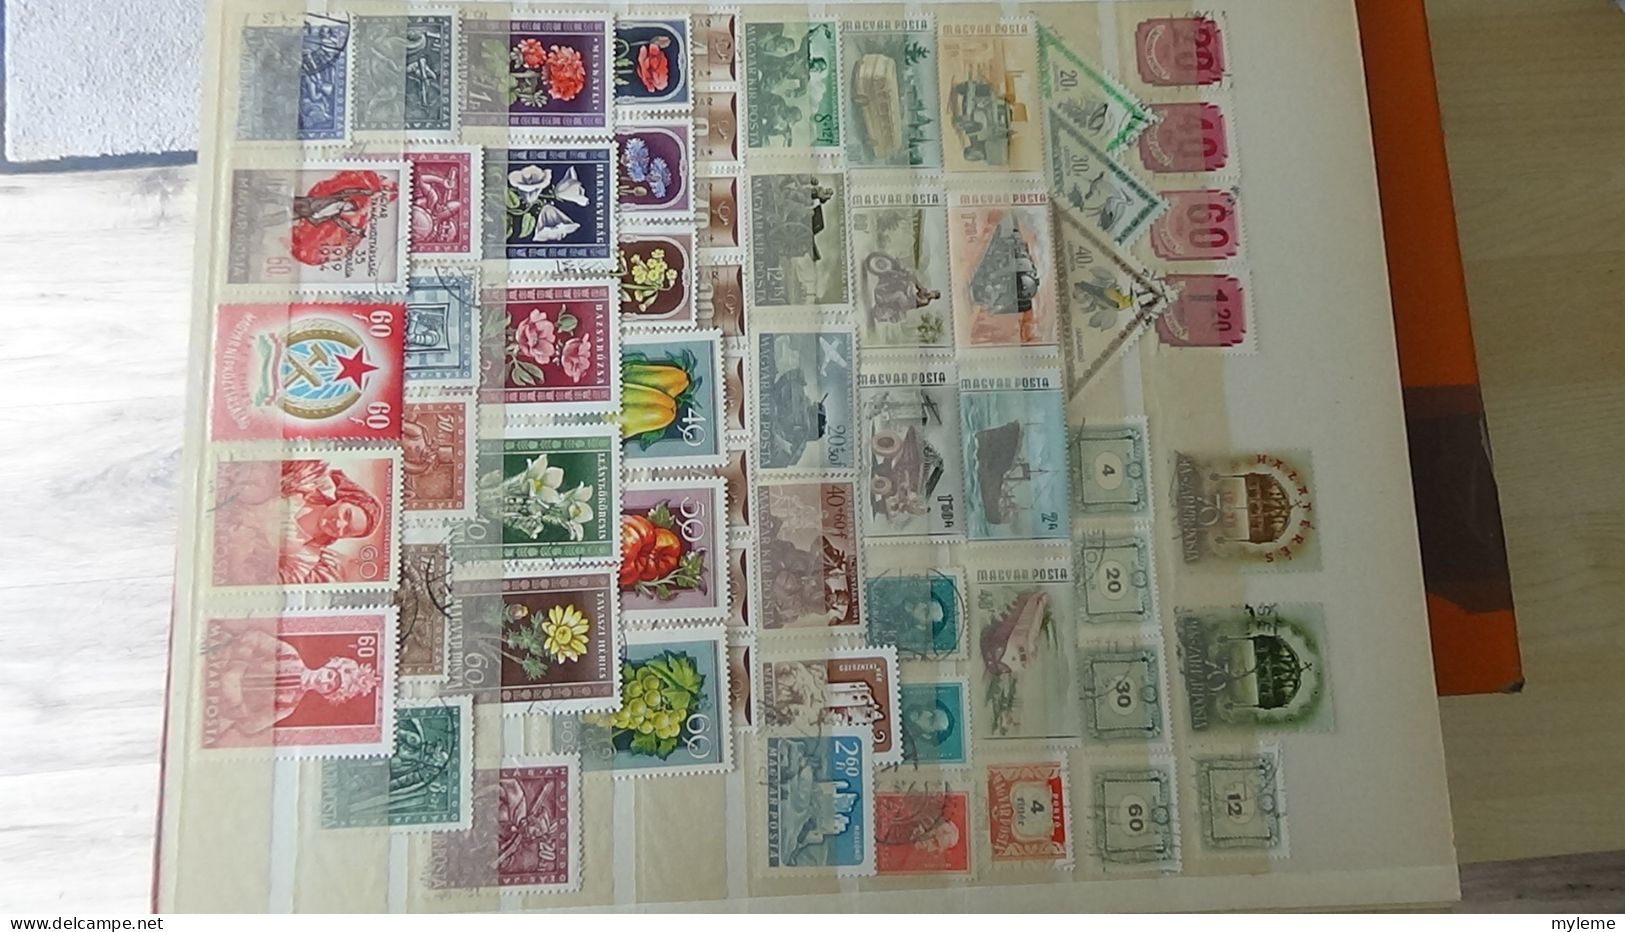 BF50 Bel ensemble de timbres oblitérés de divers pays + plaquette de timbres **. A saisir !!!